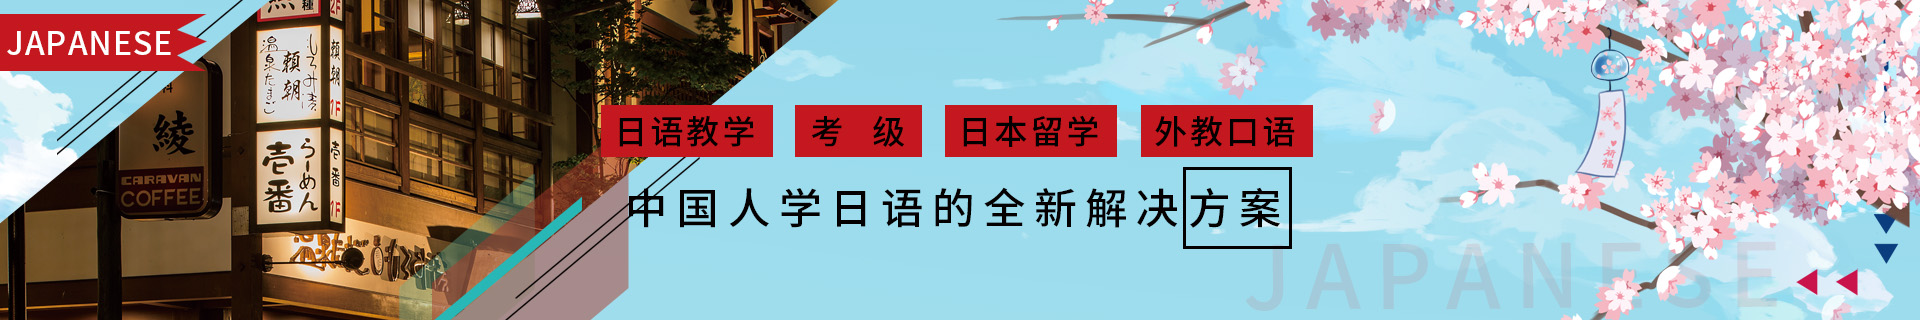 广州天河区樱花国际日语培训机构